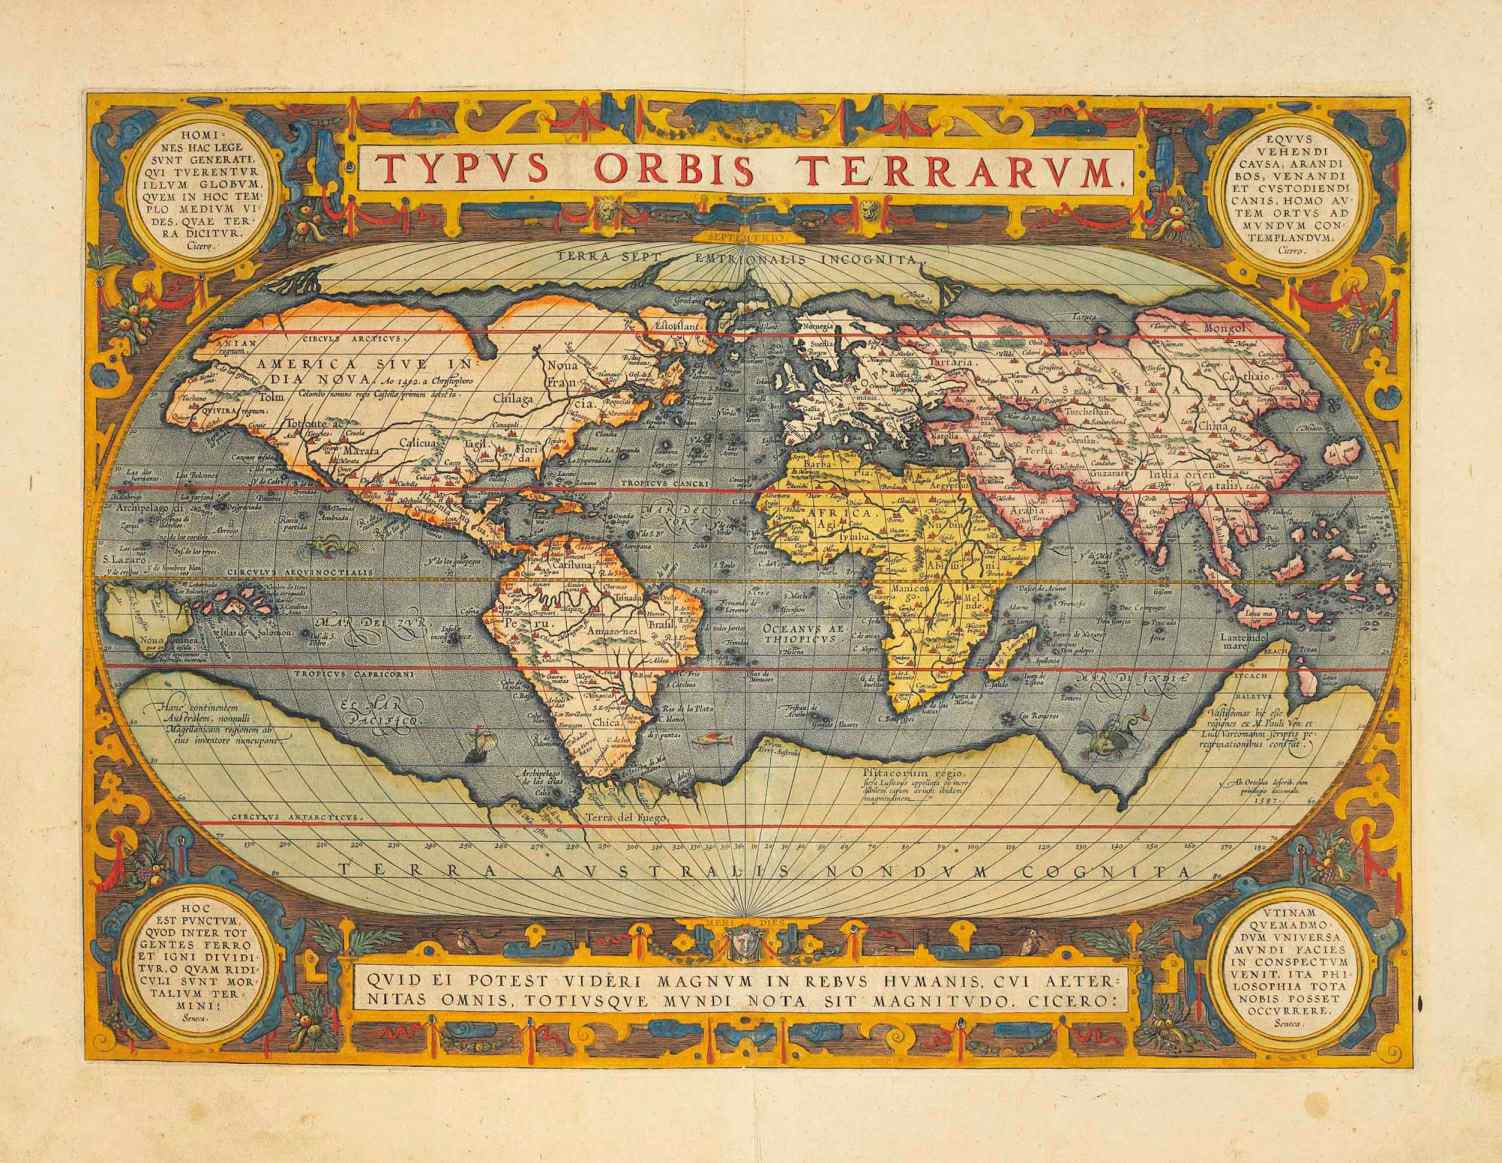 Trên bản đồ năm 1570 này, Hyperborea được hiển thị như một lục địa Bắc Cực và được mô tả là "Terra Septemtrionalis Incognita" (Vùng đất phương Bắc không xác định).